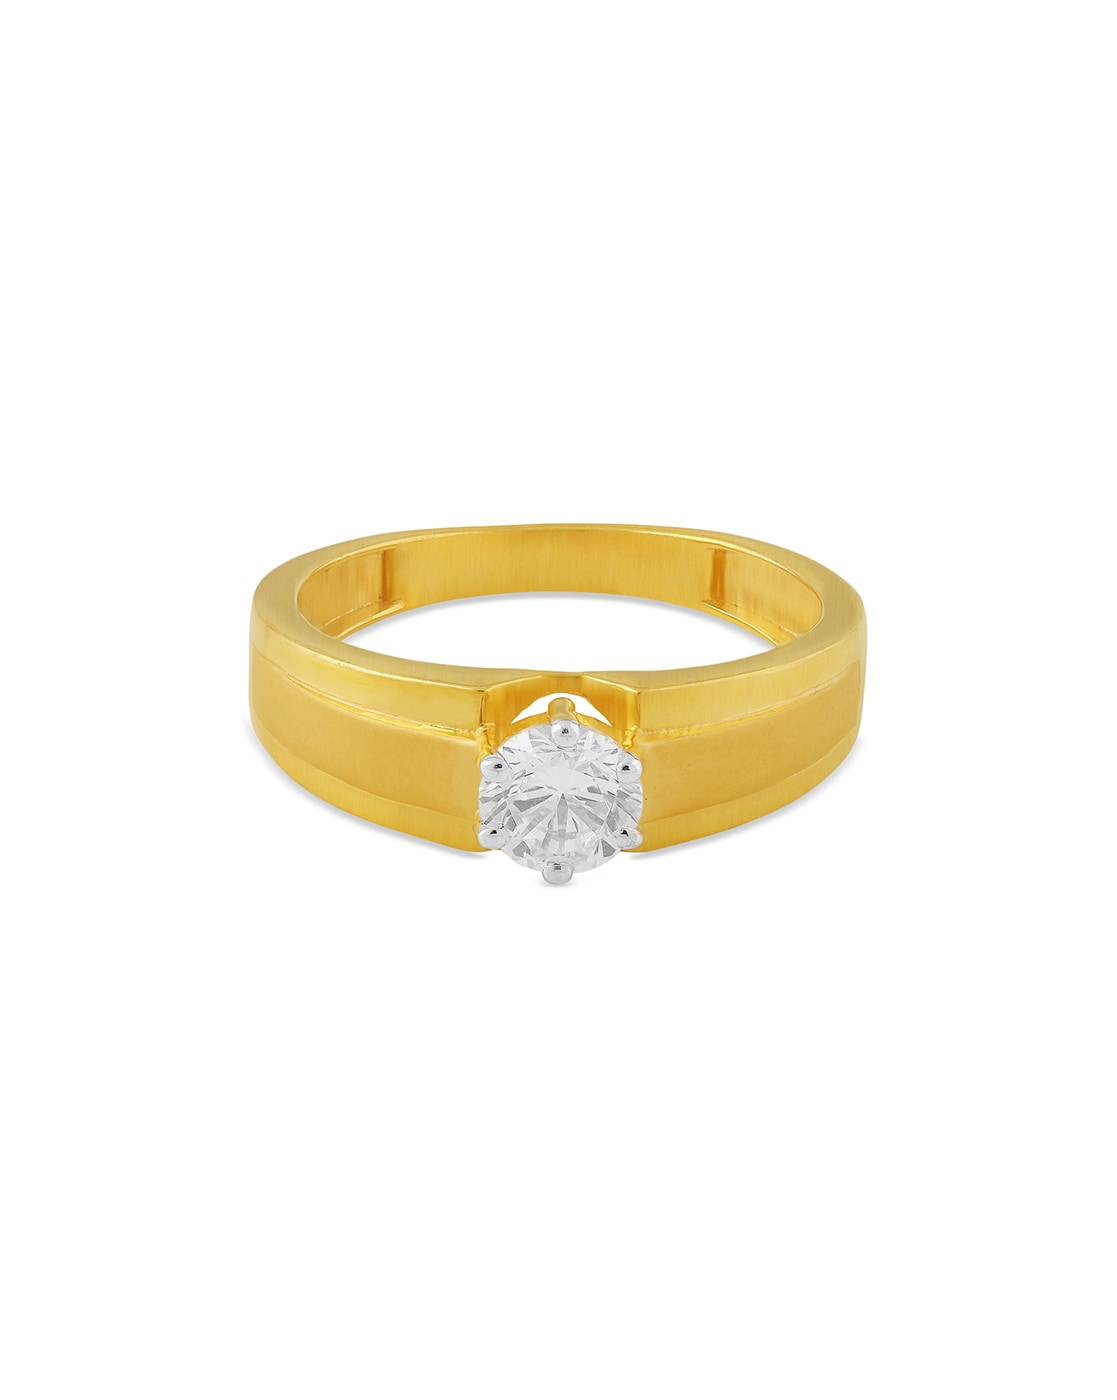 Reliance Jewels flaunts their Diamond Collection. www.reliancejewels.com # Reliance #RelianceJewels #Jewels #Gold #Diam… | Fancy jewelry, Beautiful  jewelry, Necklace